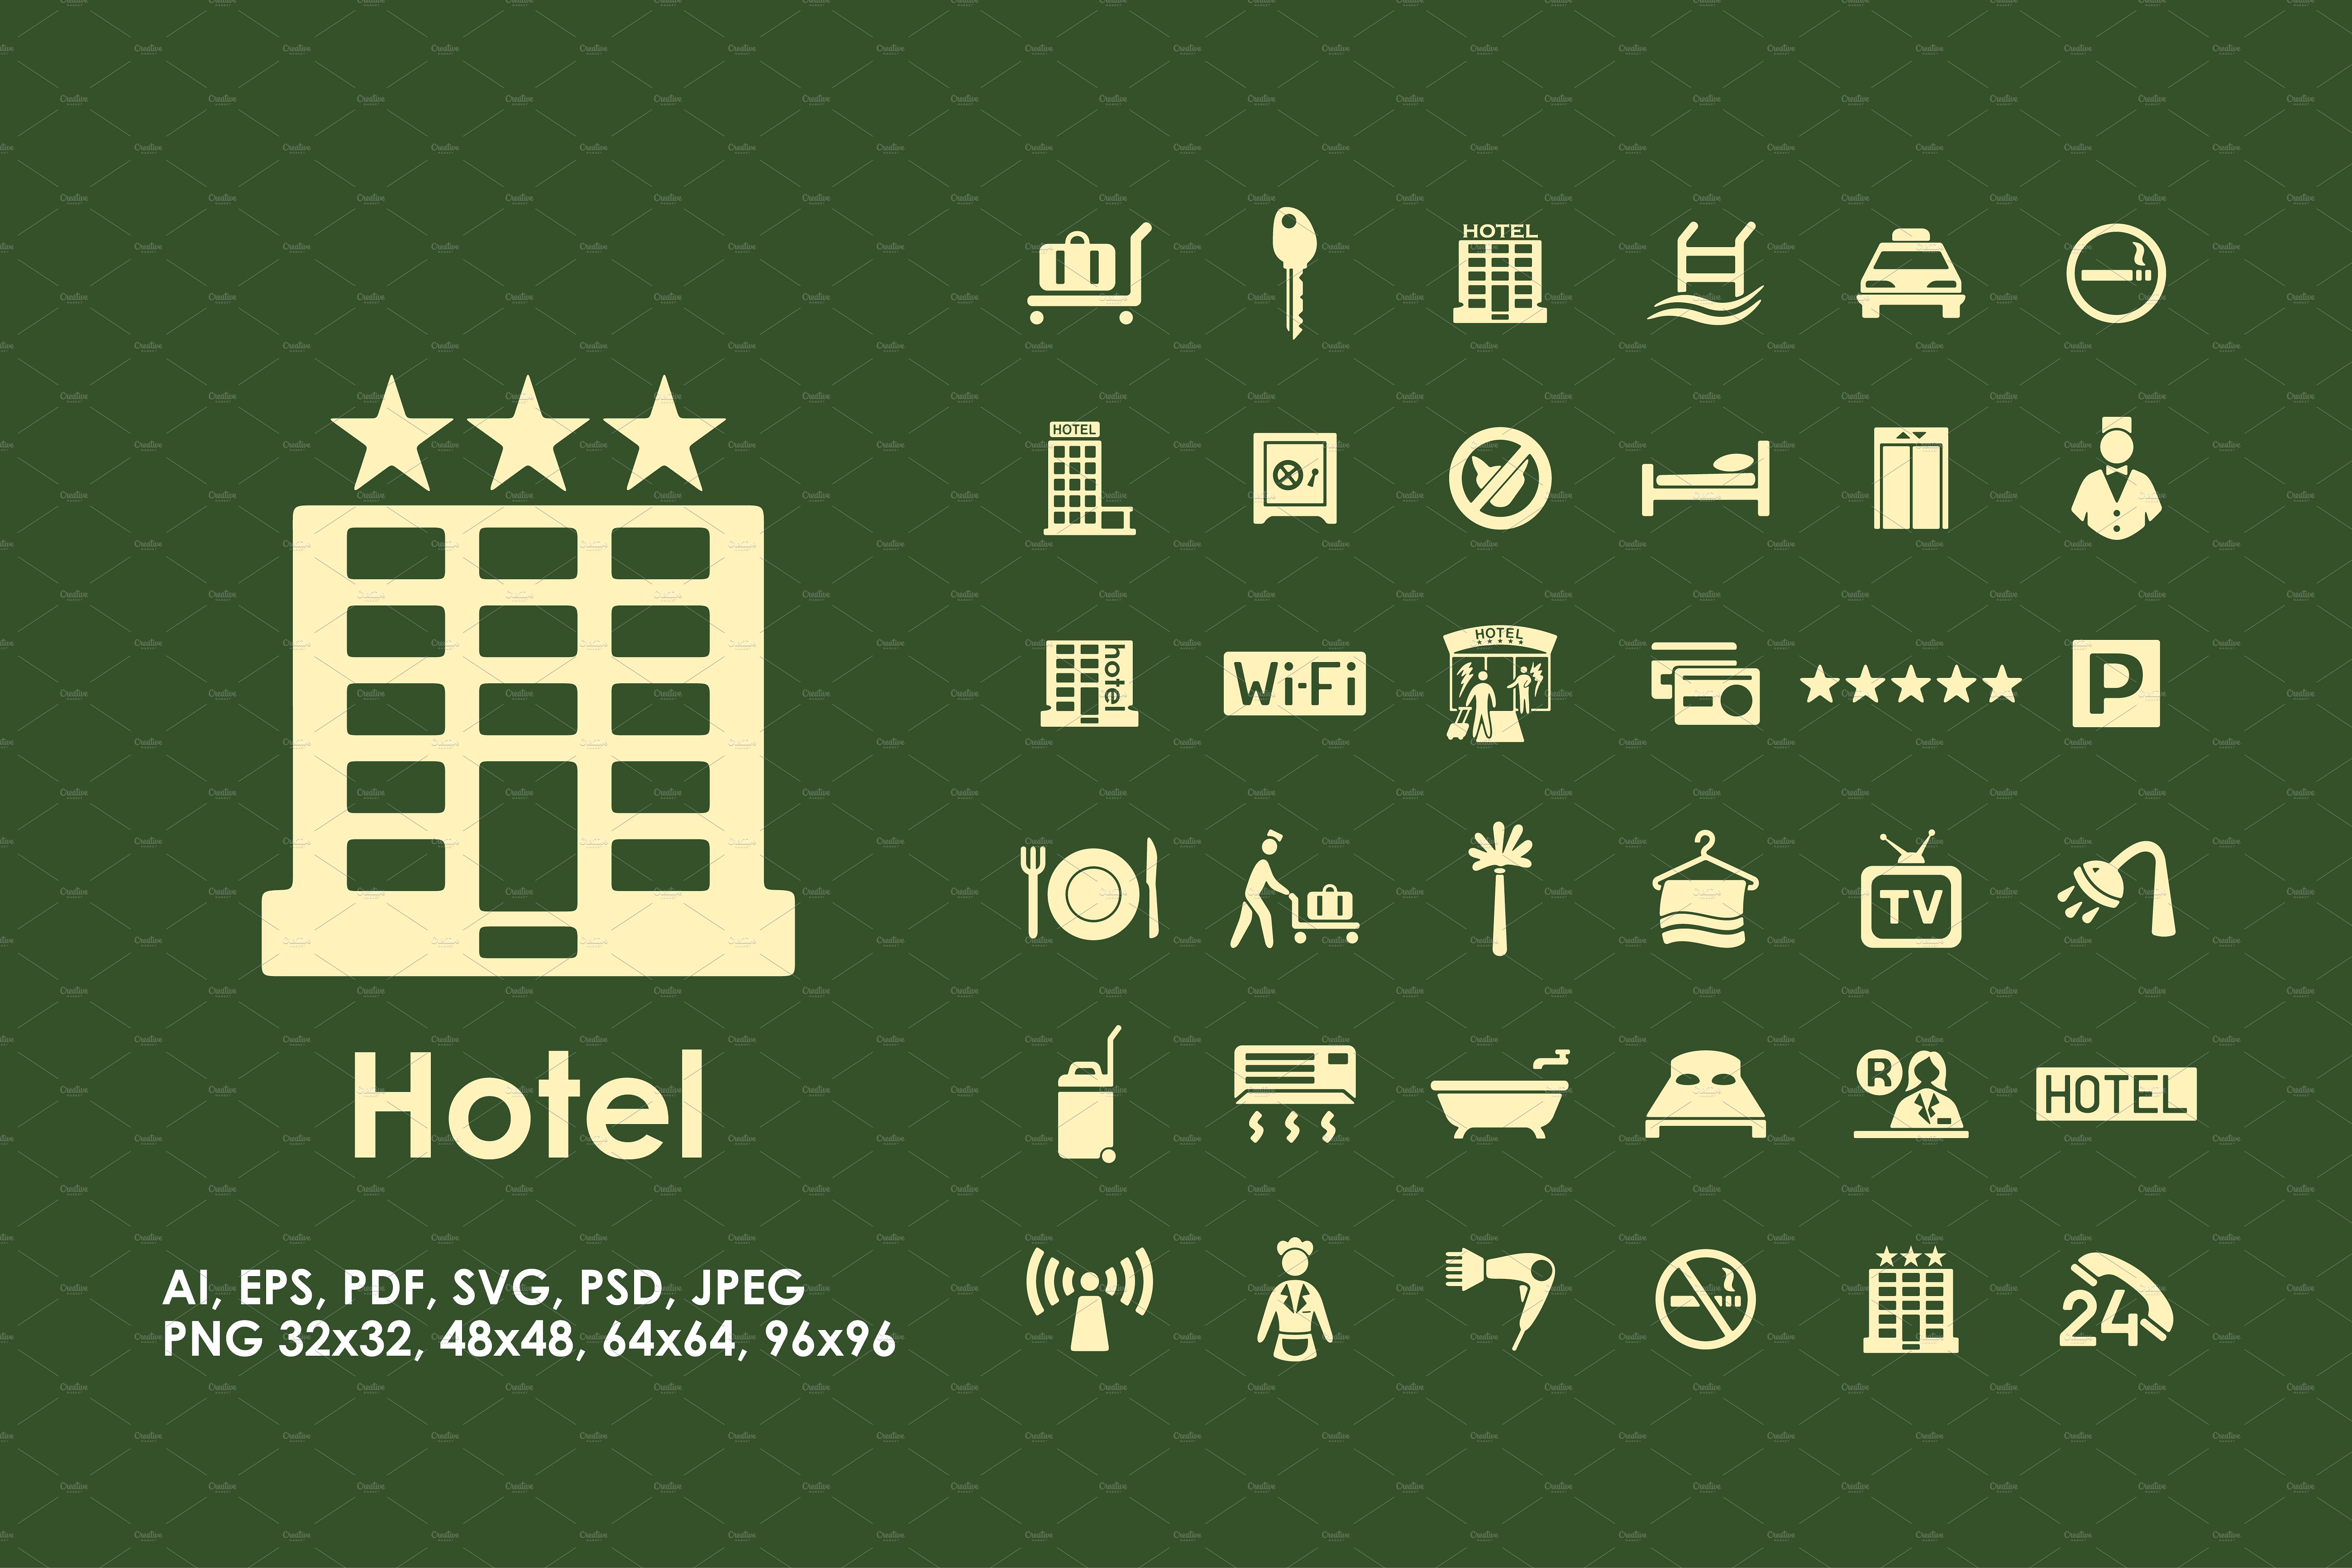 36枚酒店住宿主题图标 36 hotel icons插图